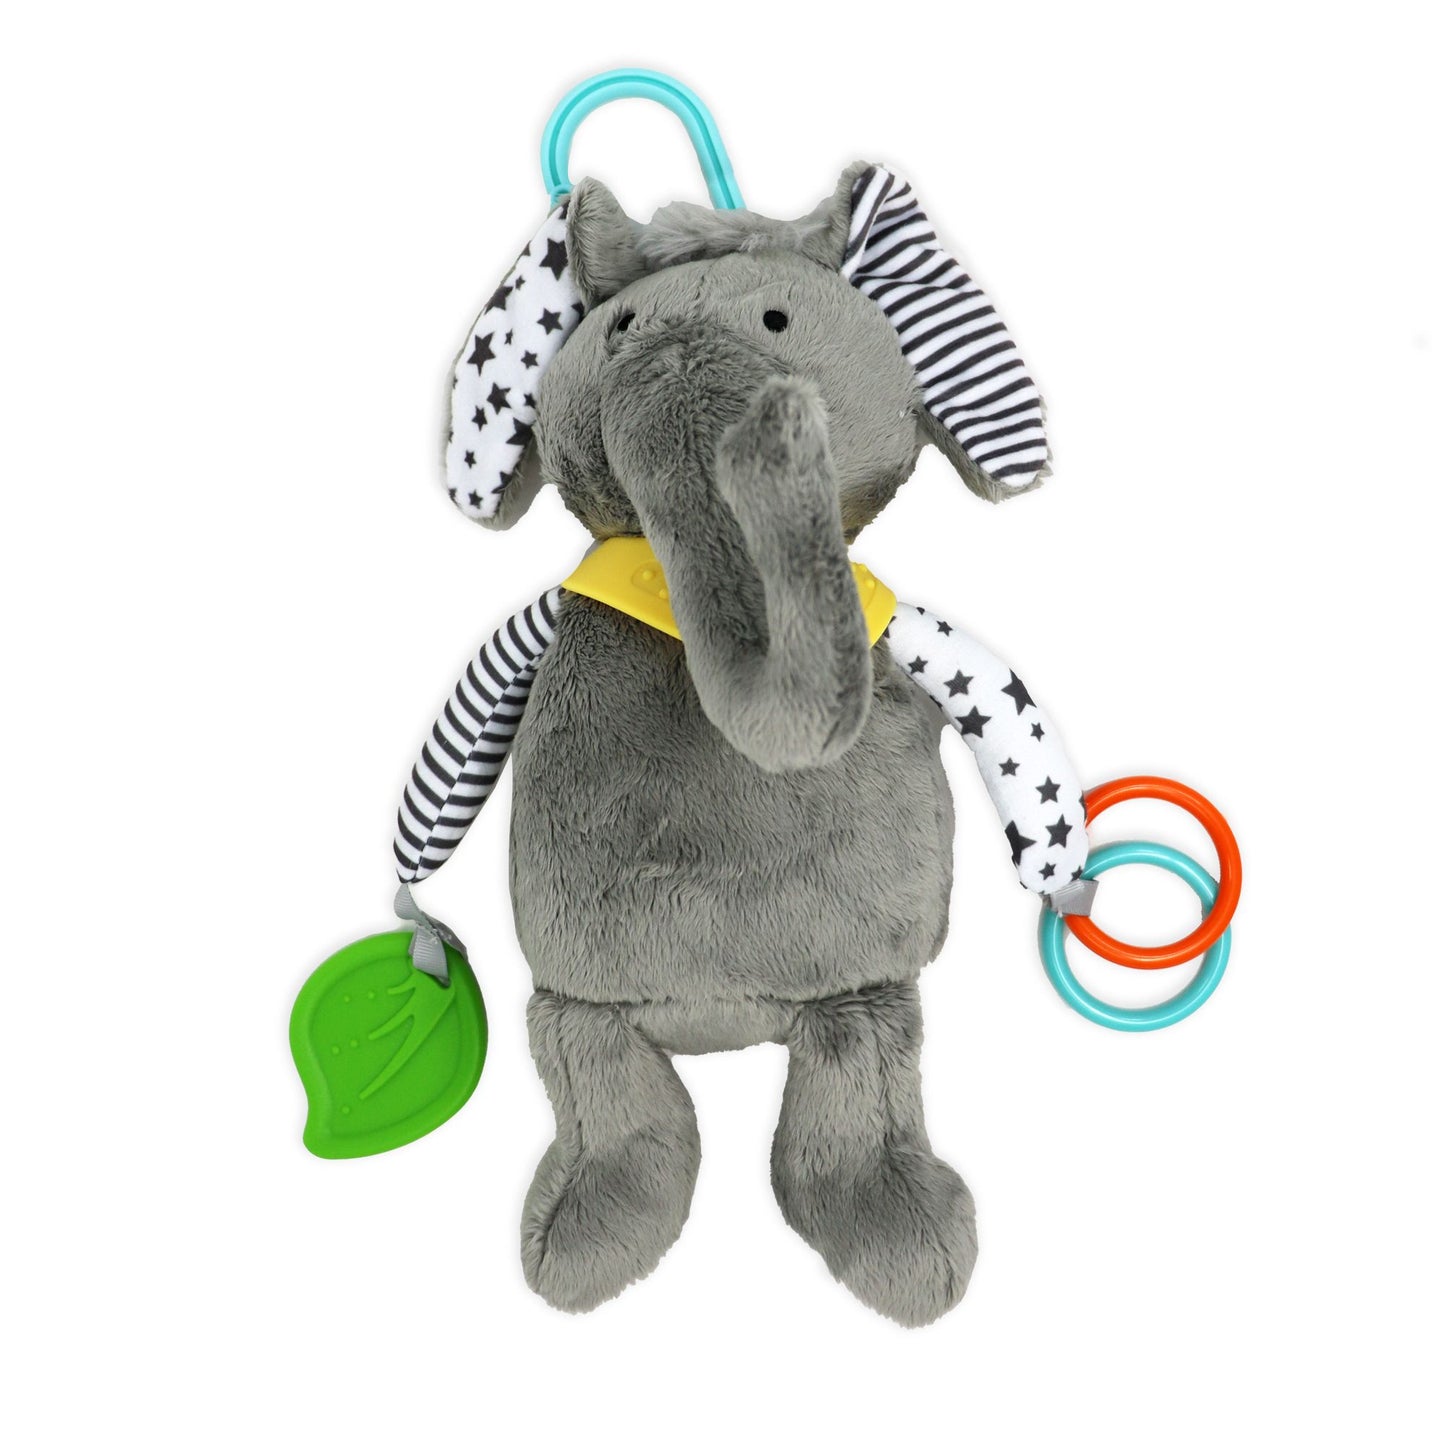 Plush Activity Toy - Grey Elephant